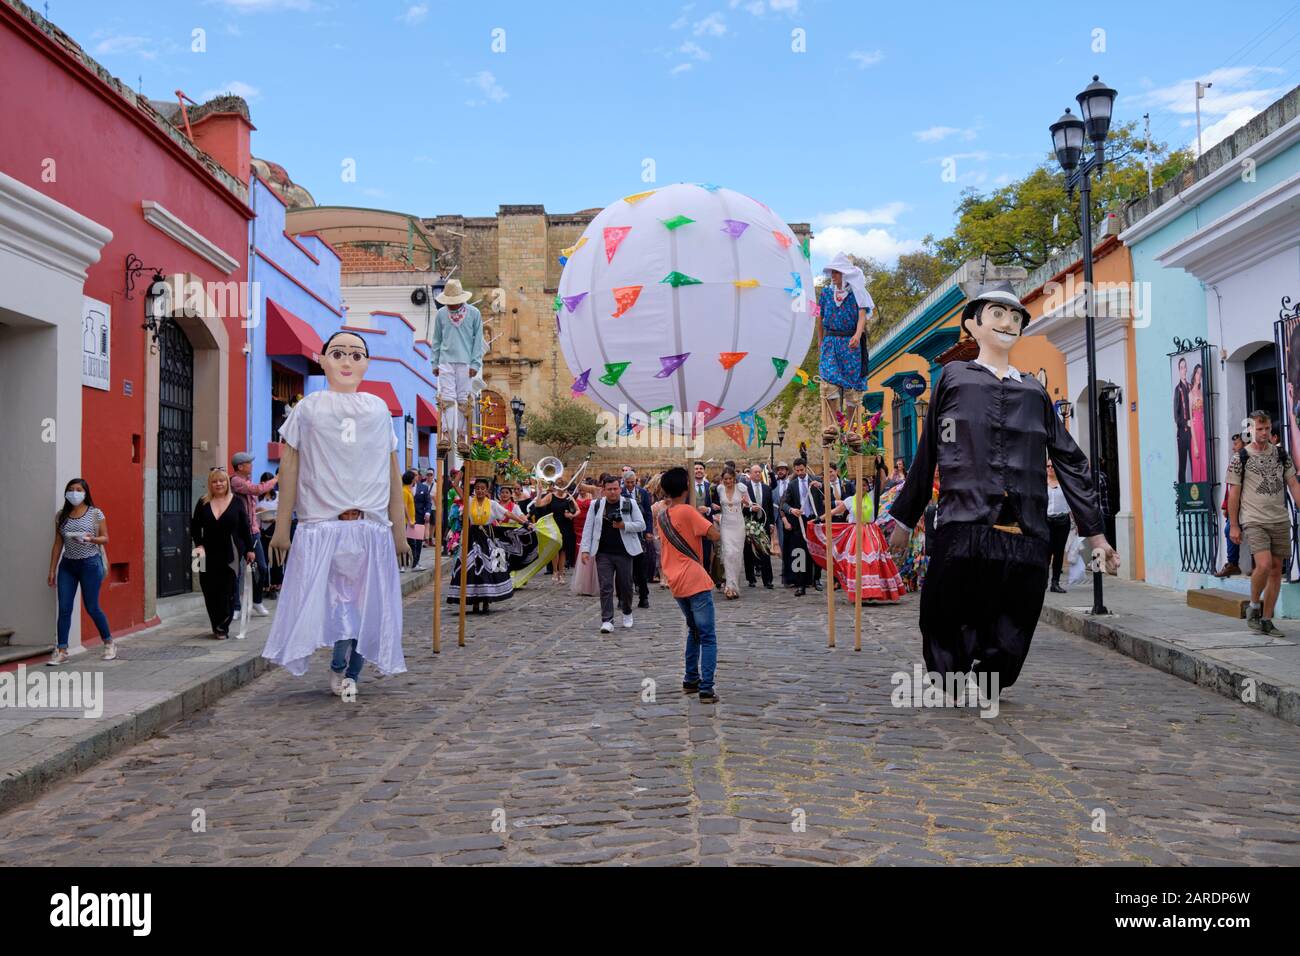 Traditionelle Hochzeitsfeier (Calenda de Bodas) auf den Straßen von Oaxaca, die von Marionetten mit der Darstellung von Brautpaar und Bräuchen geführt wird. Stockfoto